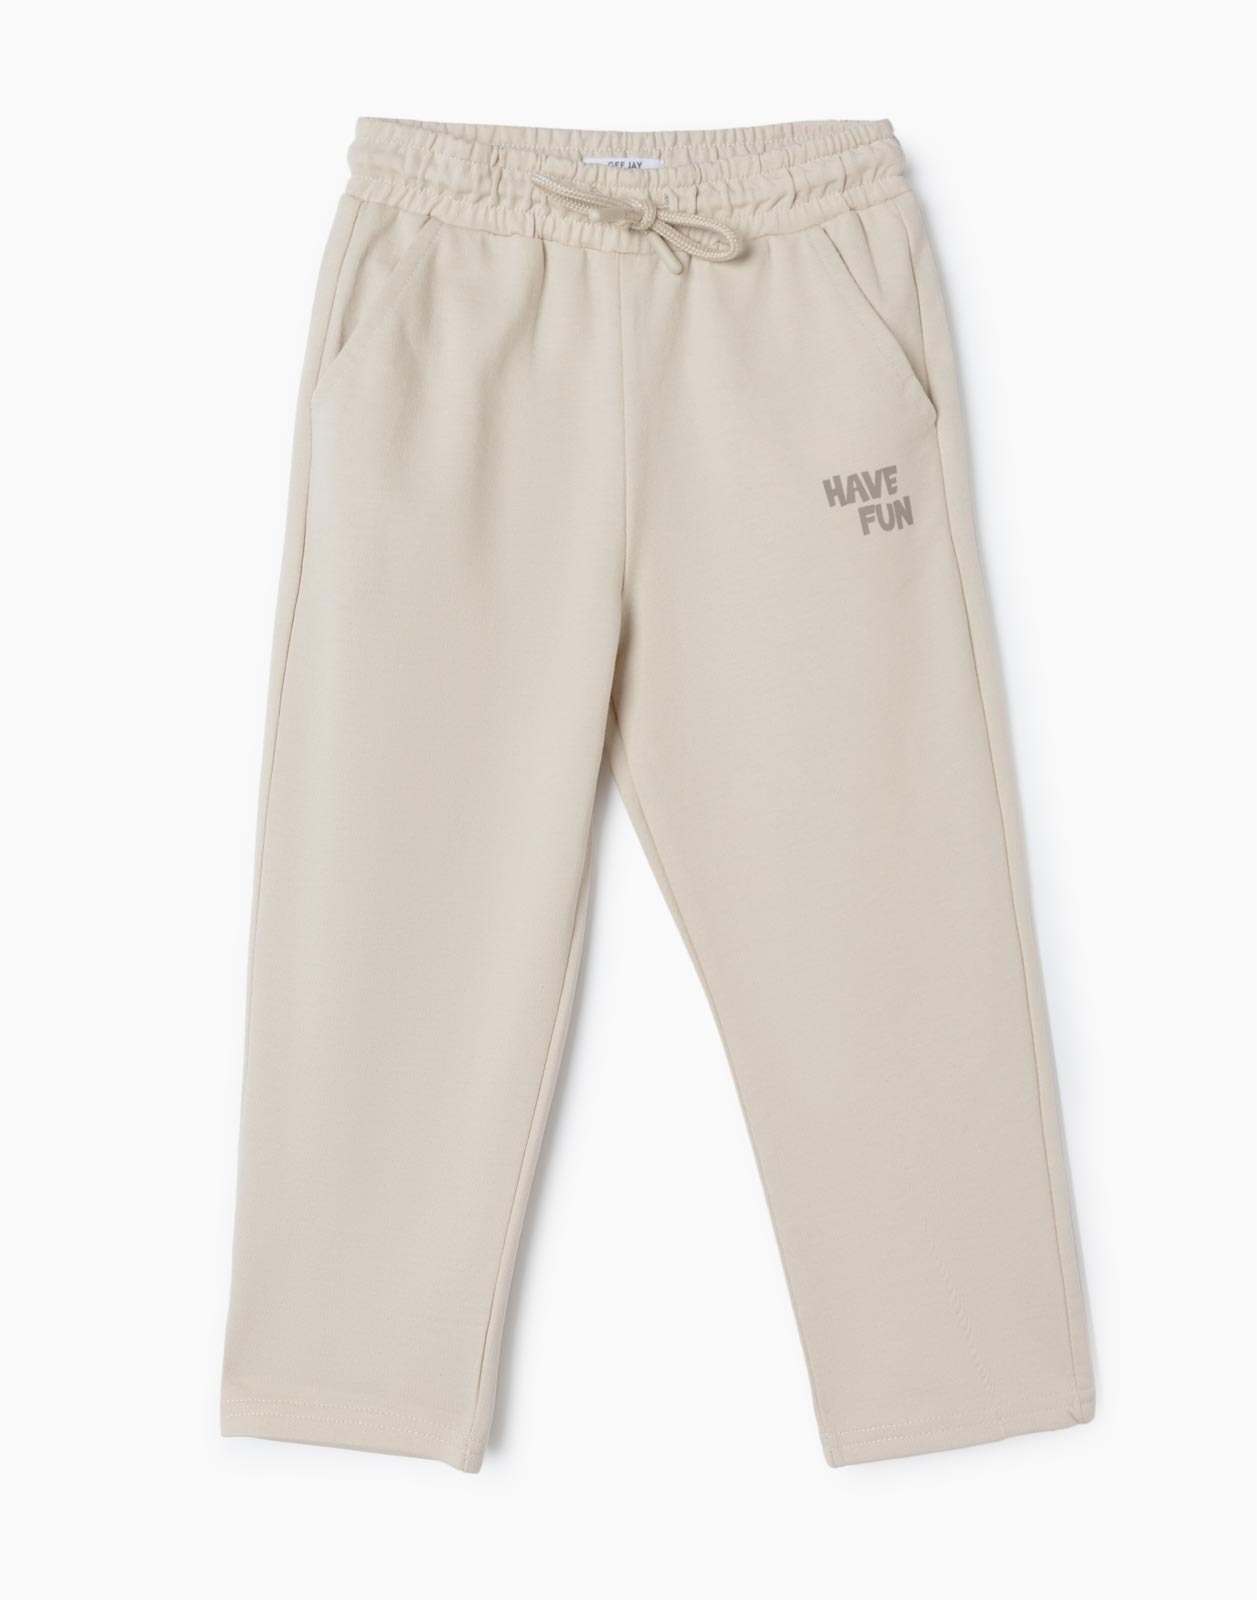 Бежевые спортивные брюки Comfort с надписью Have Fun для мальчика р.86